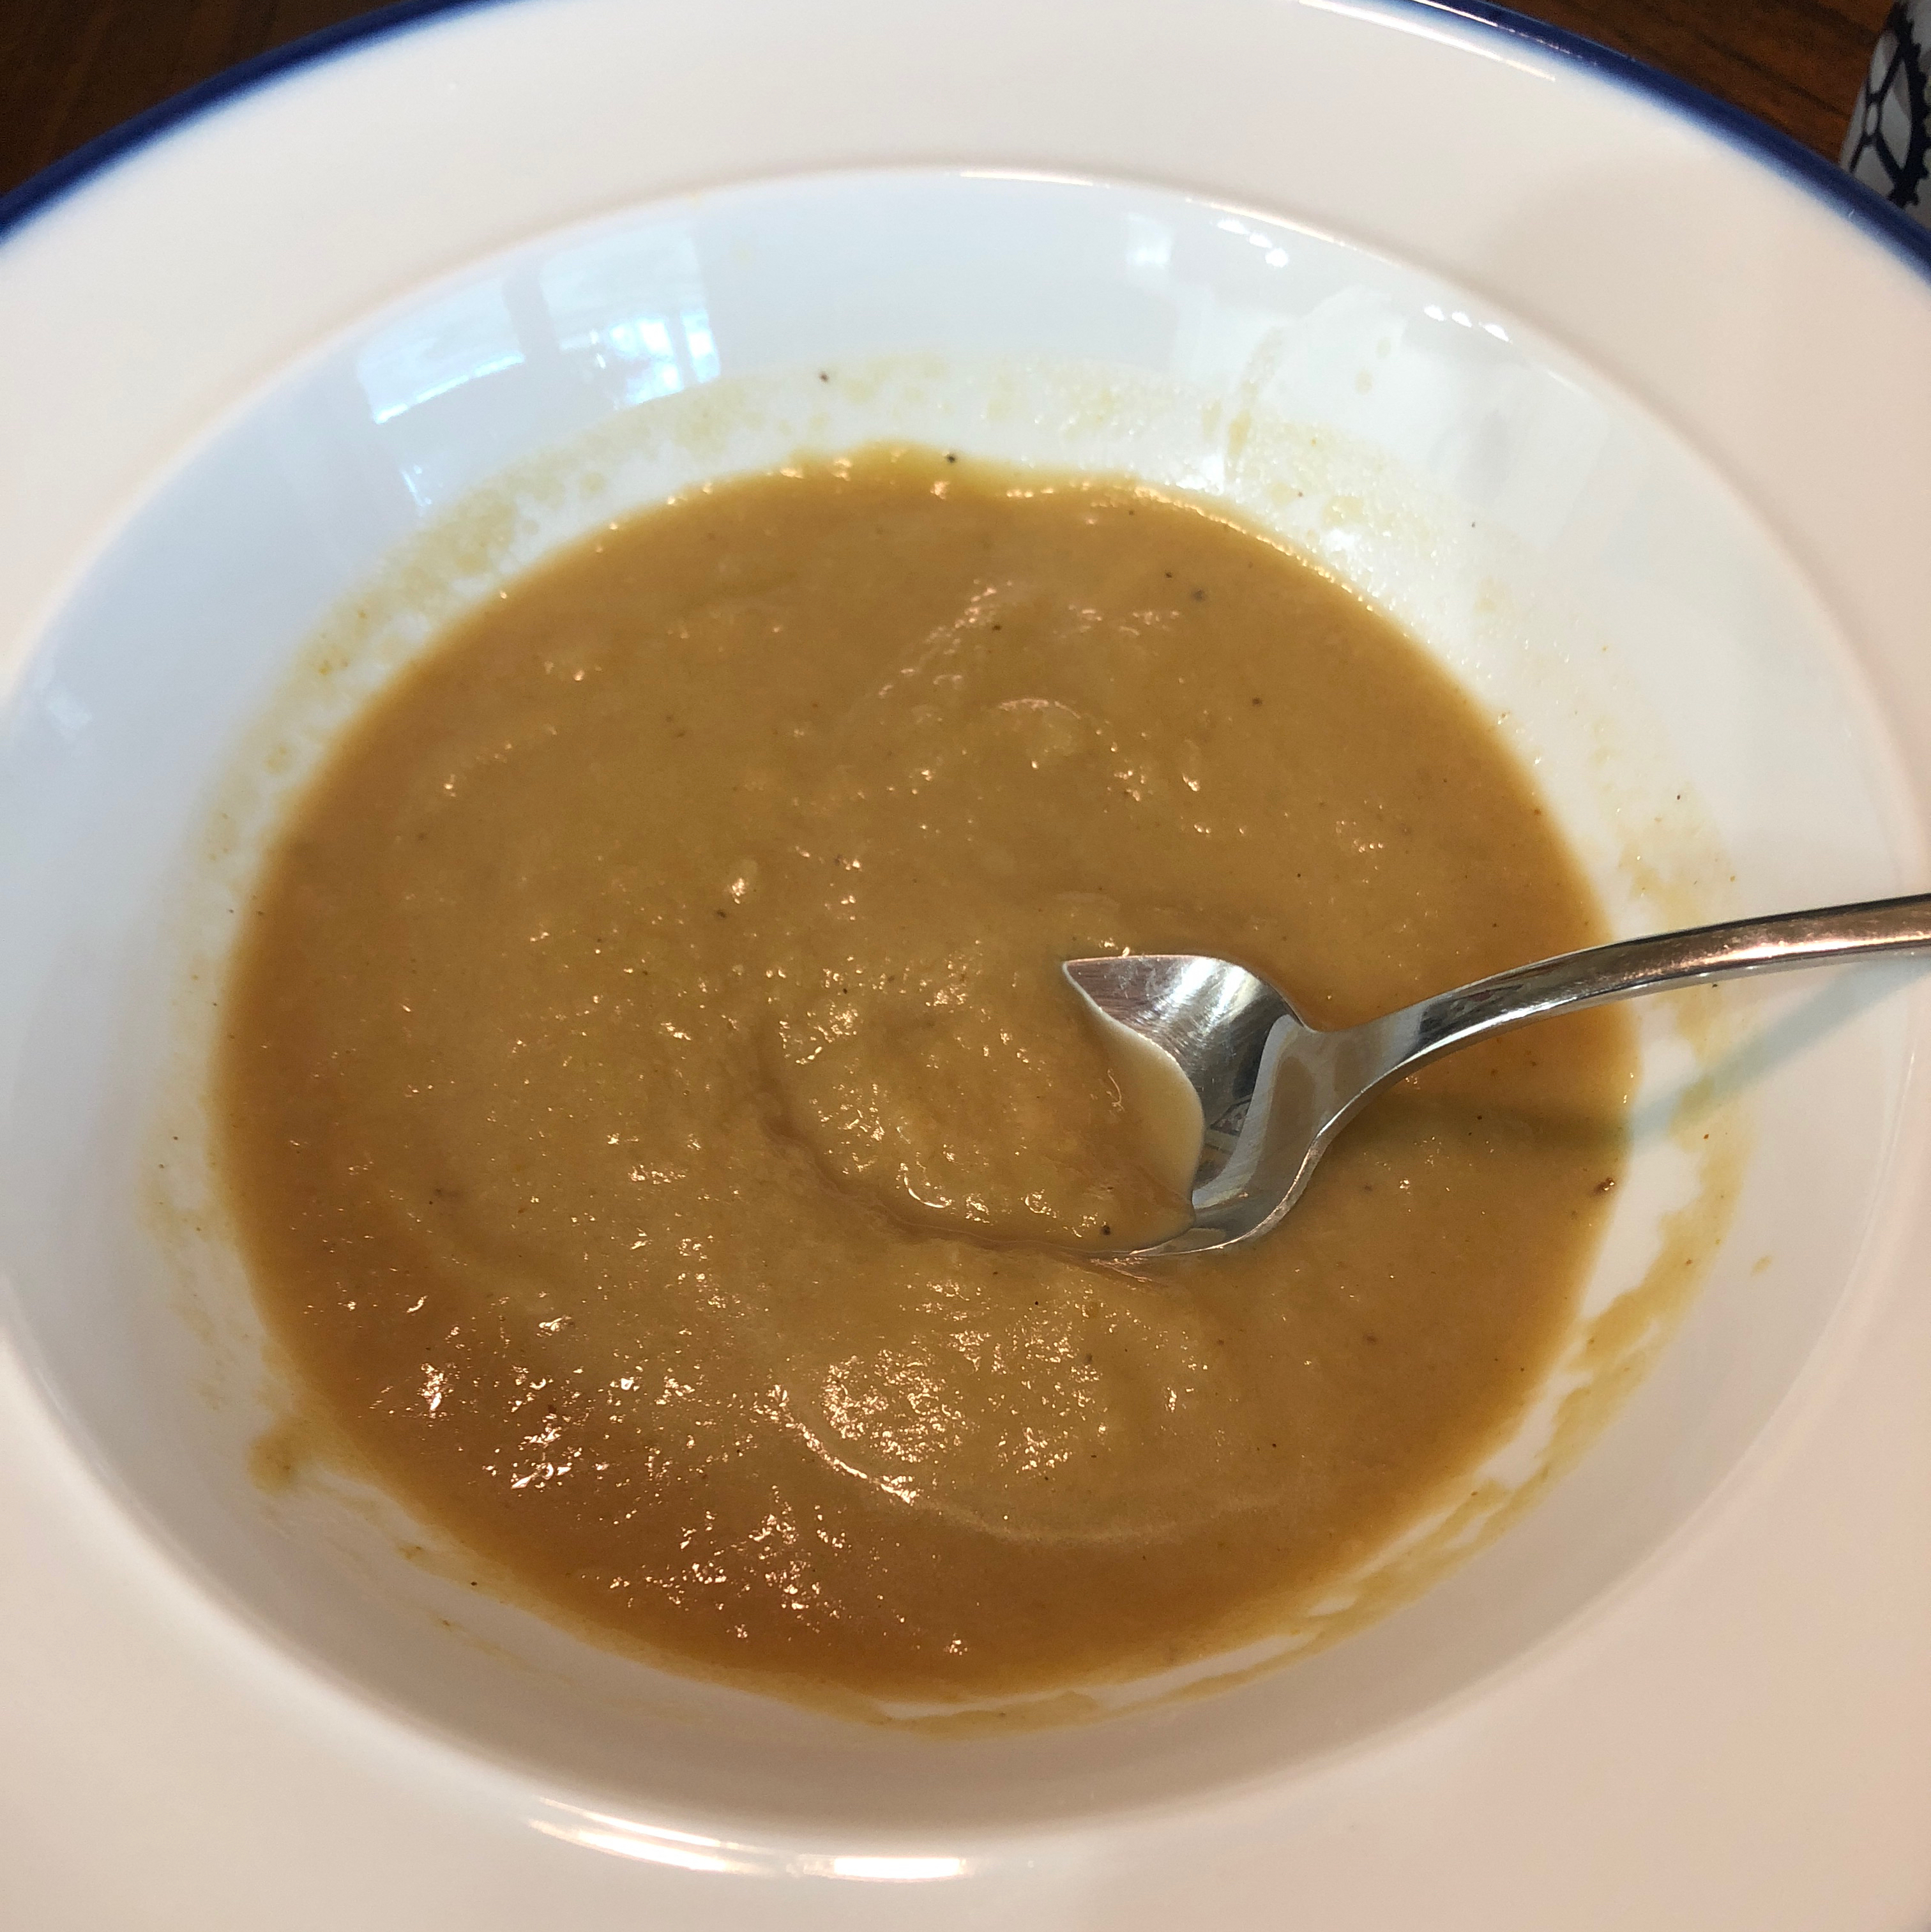 Zucchini Fenchel Suppe (Zucchini and Fennel Soup) Recipe | Allrecipes